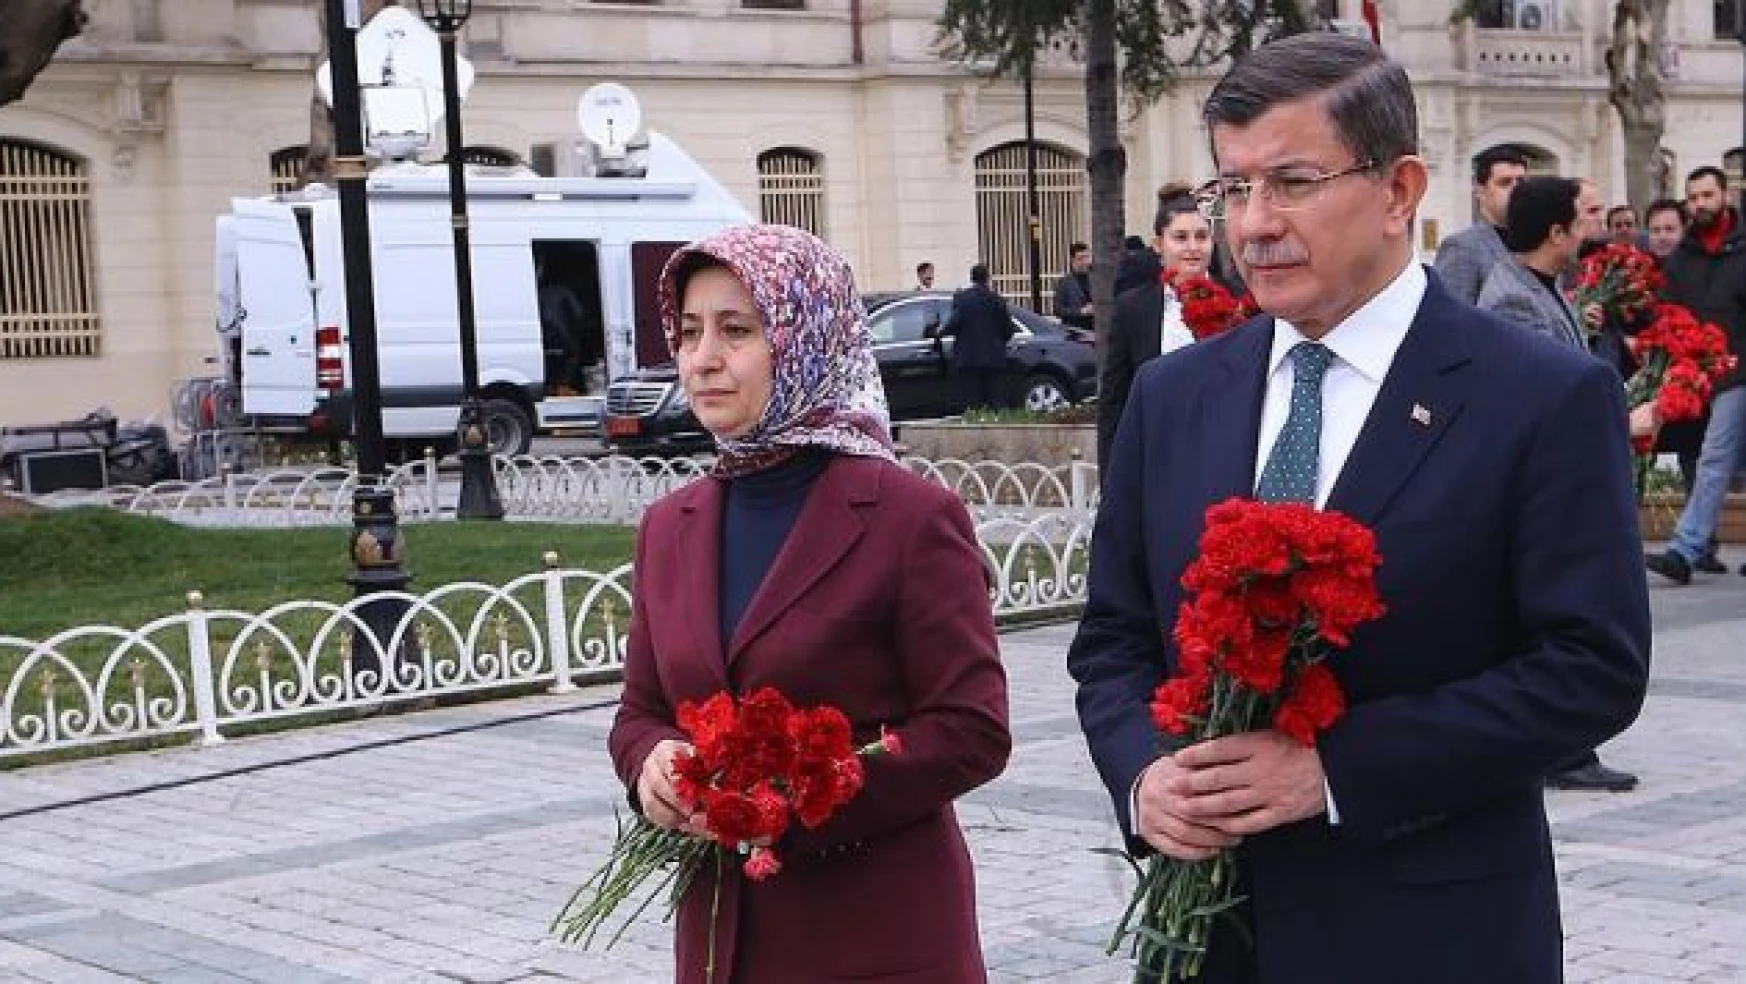 Davutoğlu Instagram'dan 'Sultanahmet' fotoğrafı paylaştı